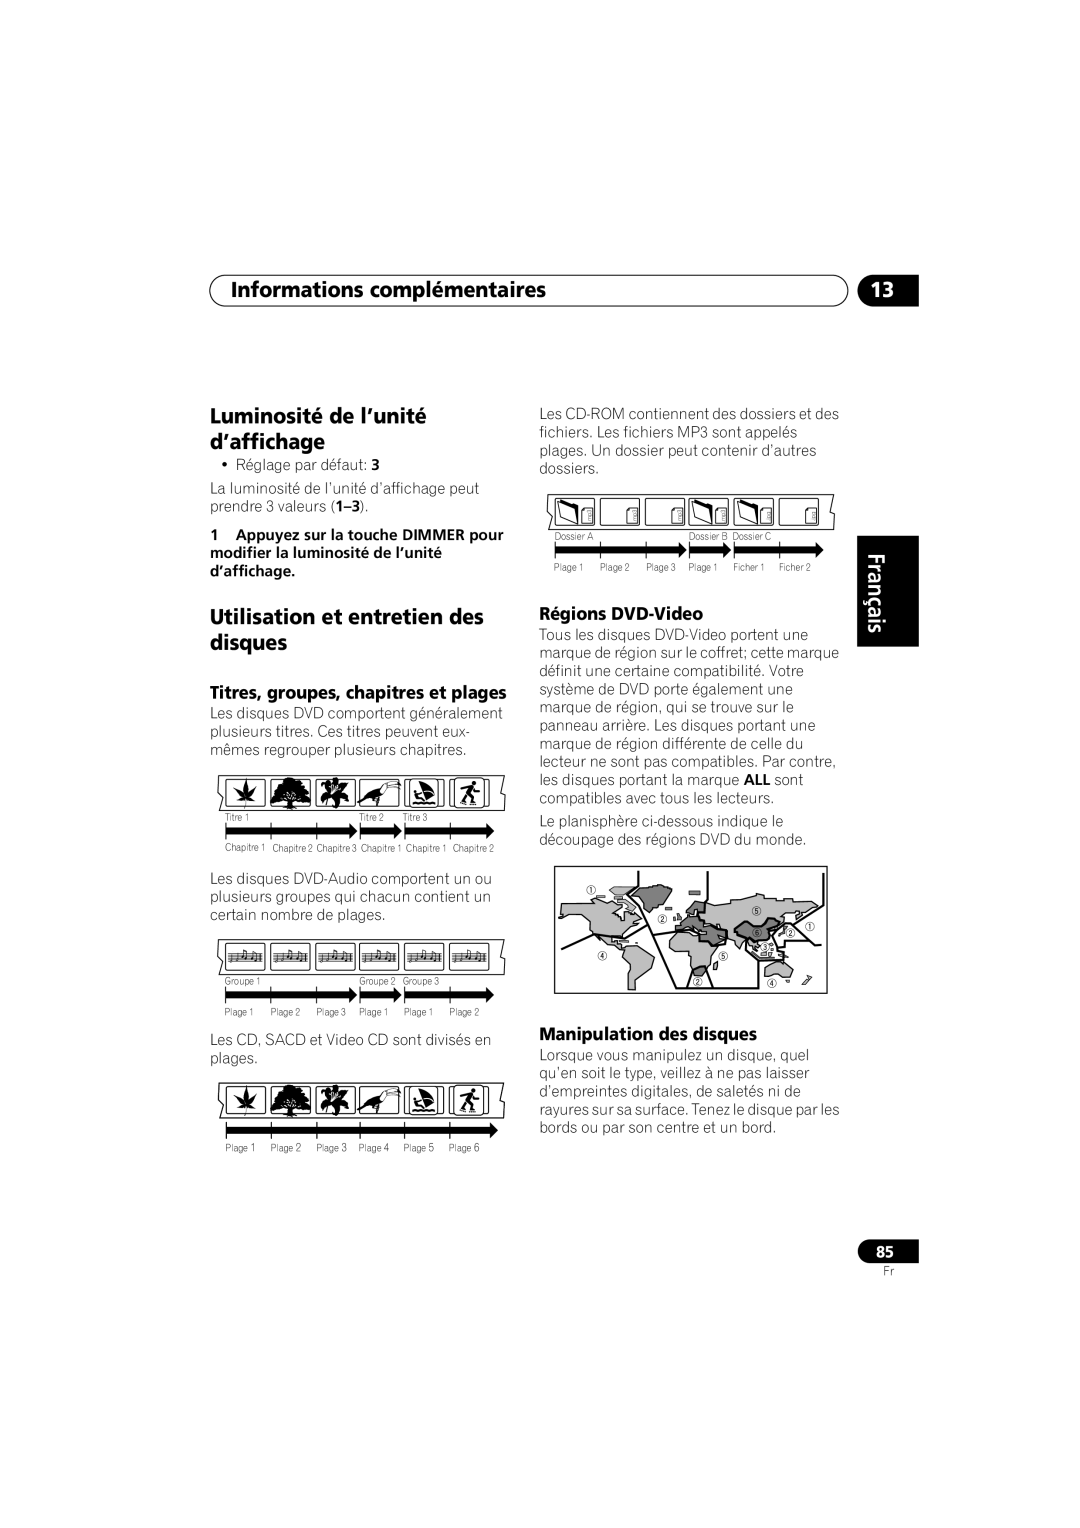 Pioneer S-DV99ST Informations complémentaires, Luminosité de l’unité d’affichage, Utilisation et entretien des disques 